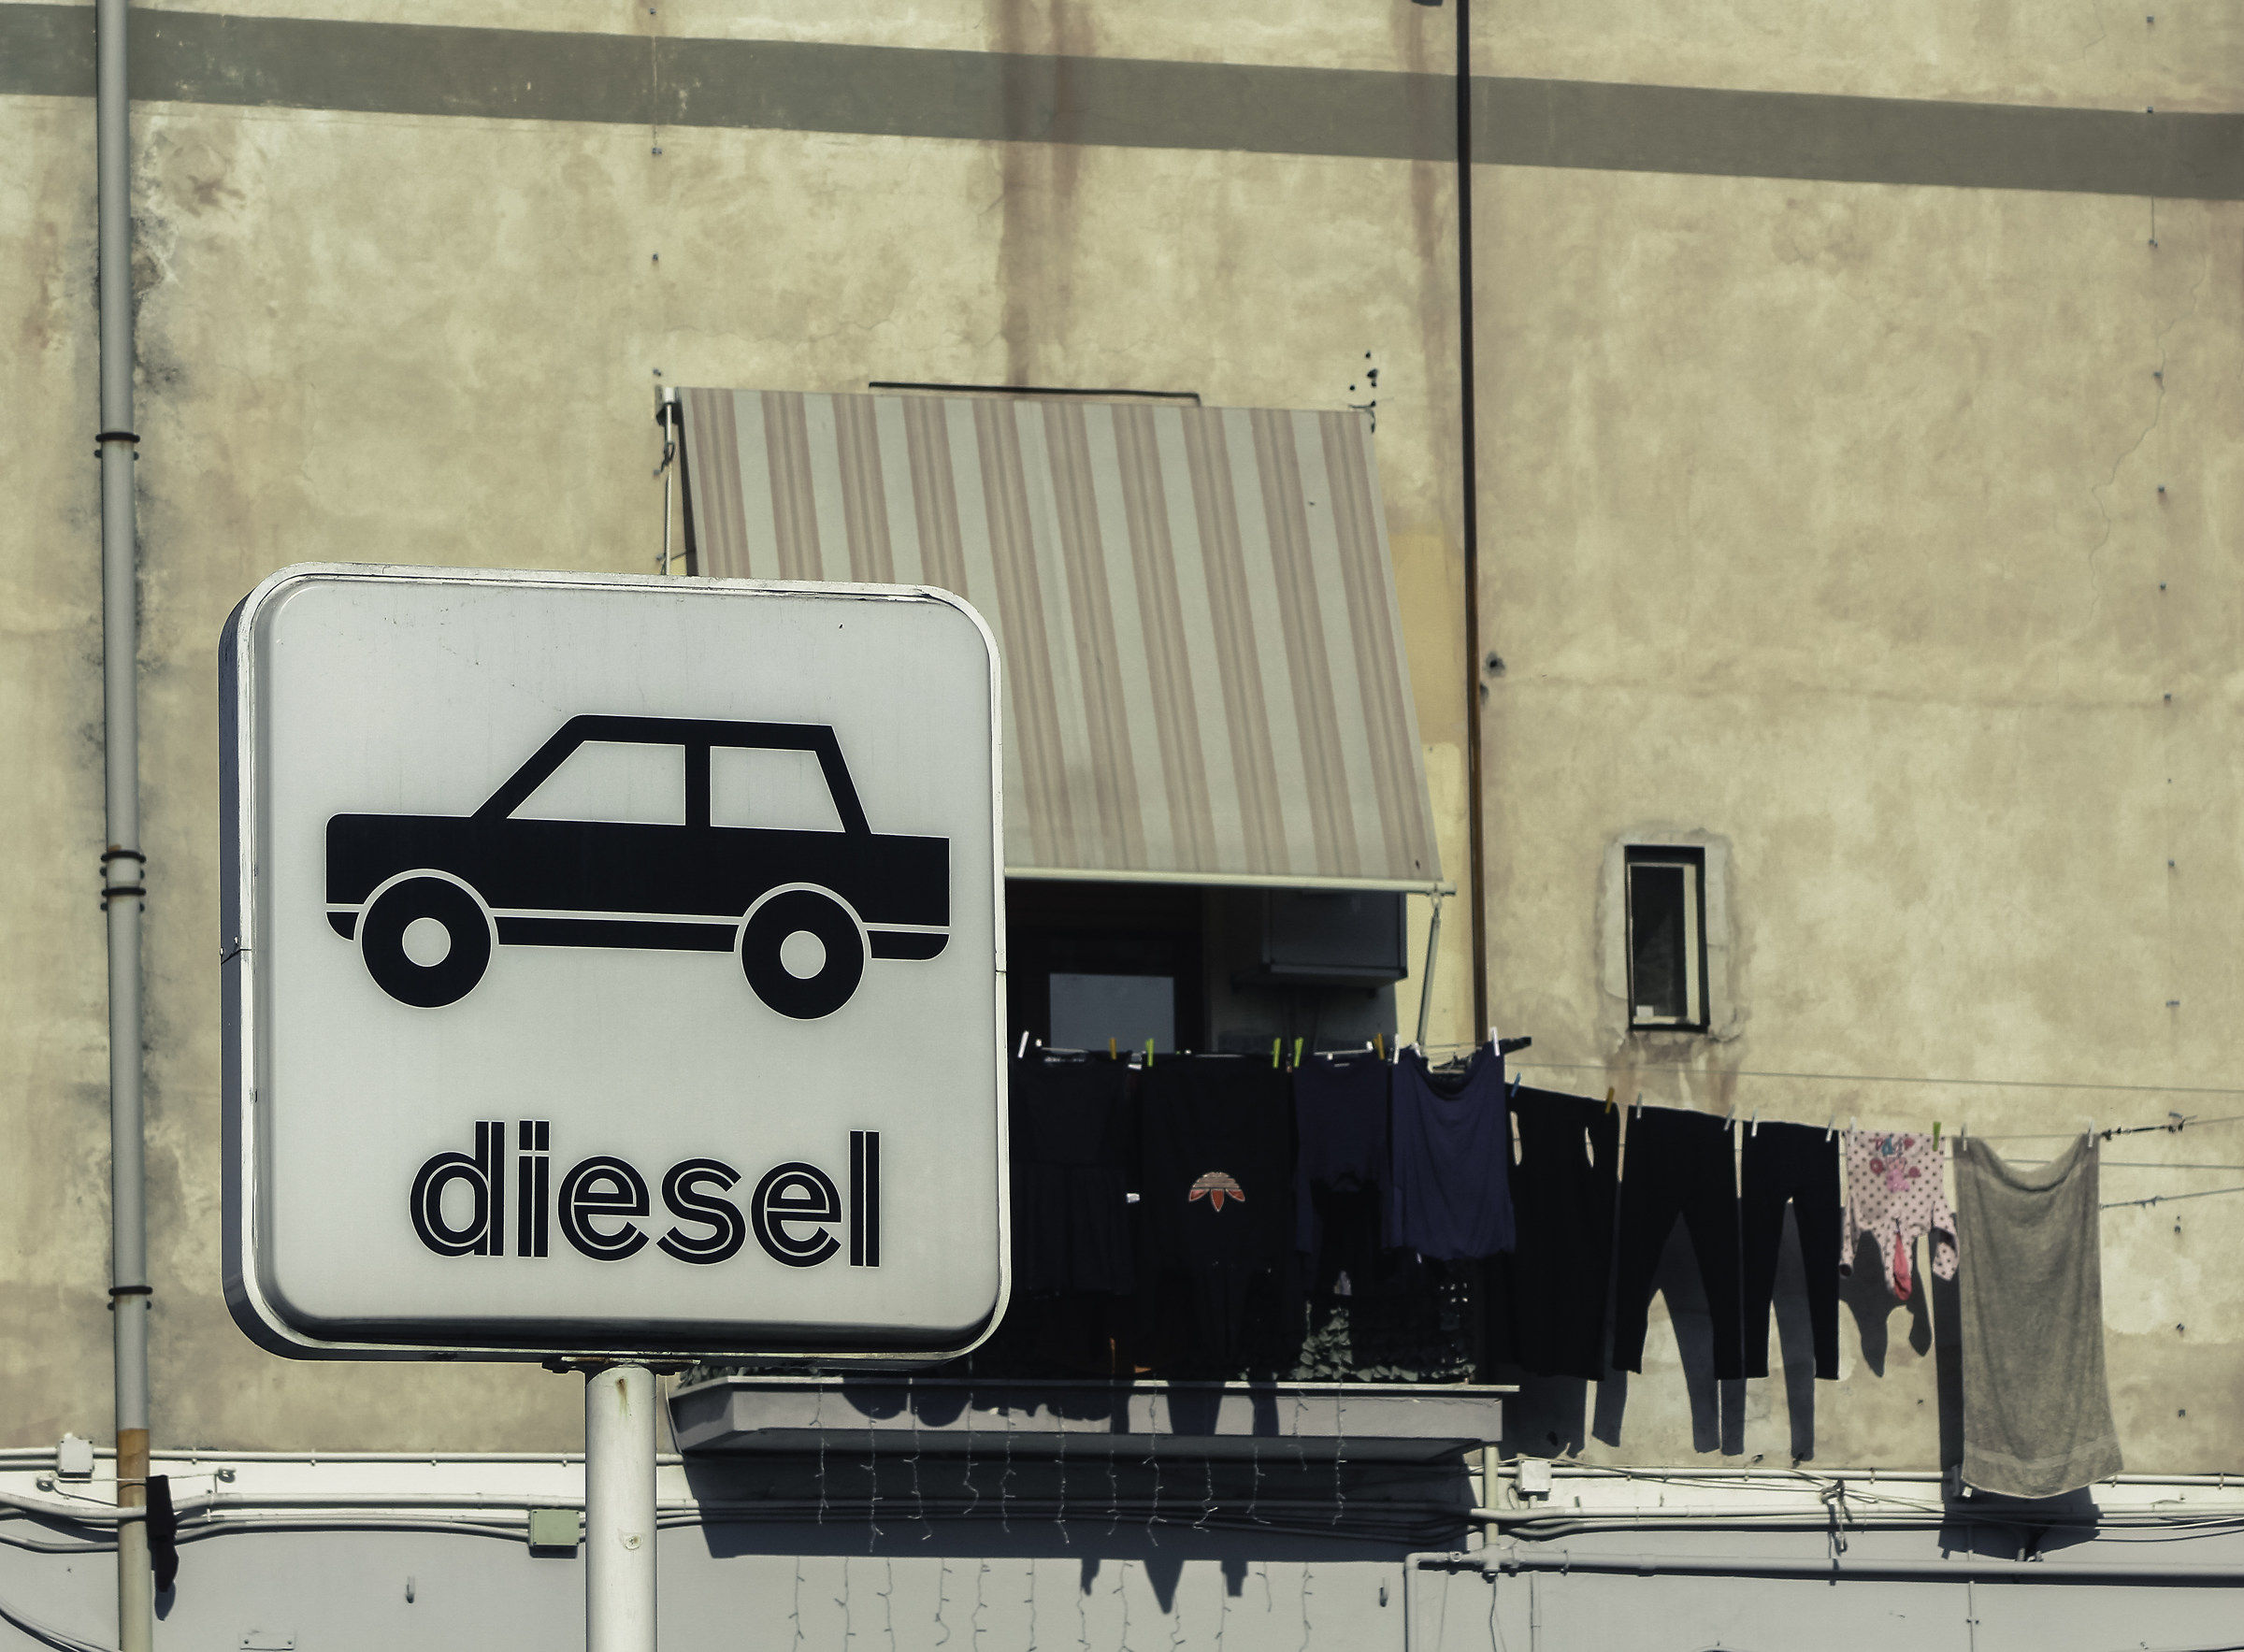 Diesel...